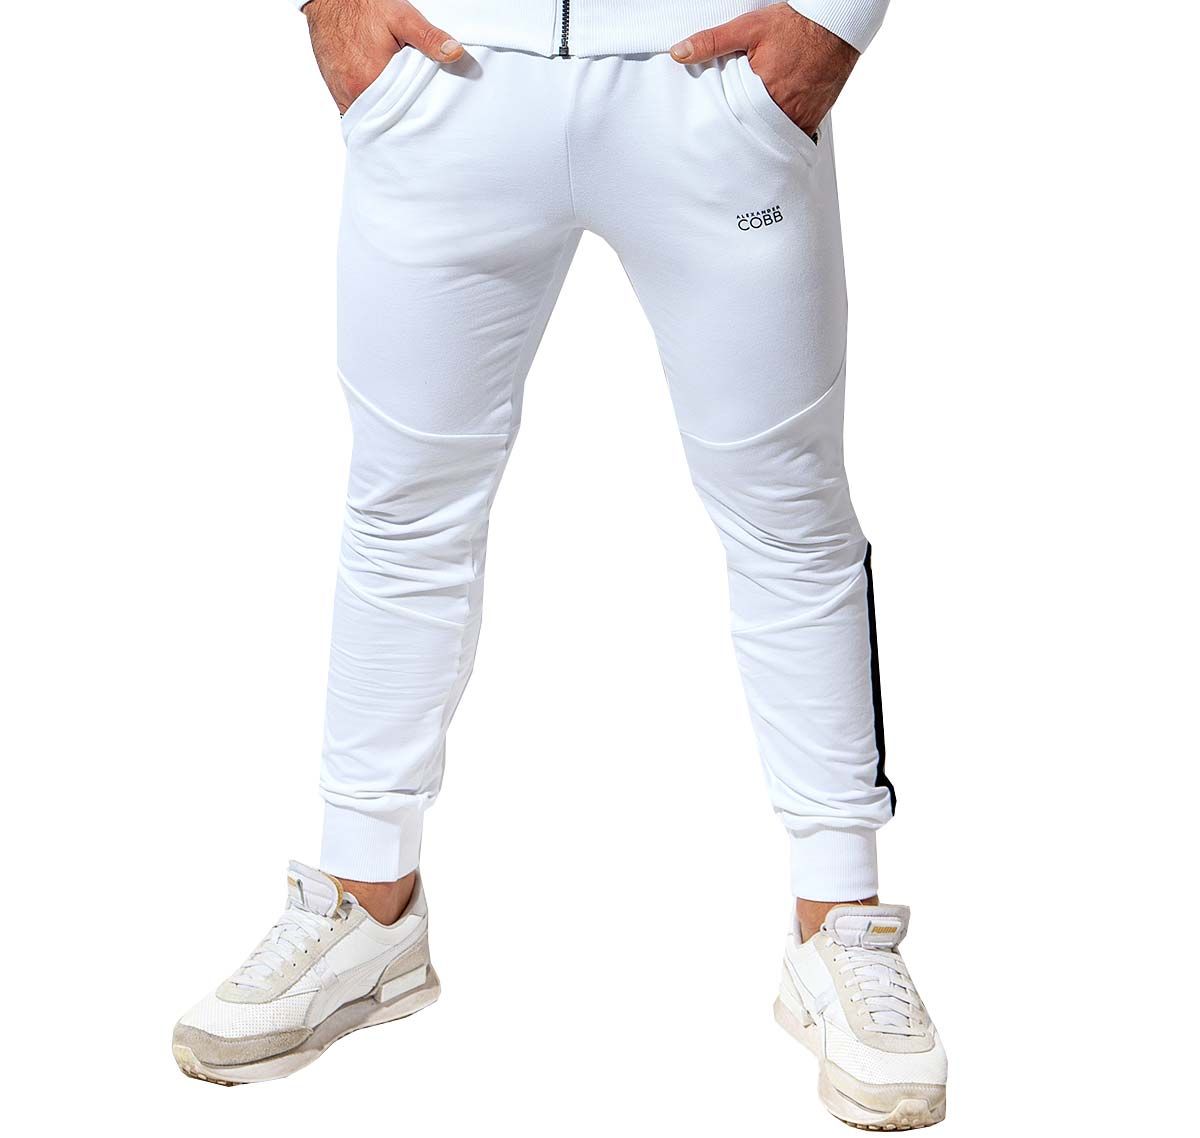 Alexander COBB Pantalon de sport PANTS WHITE BLACK, blanc